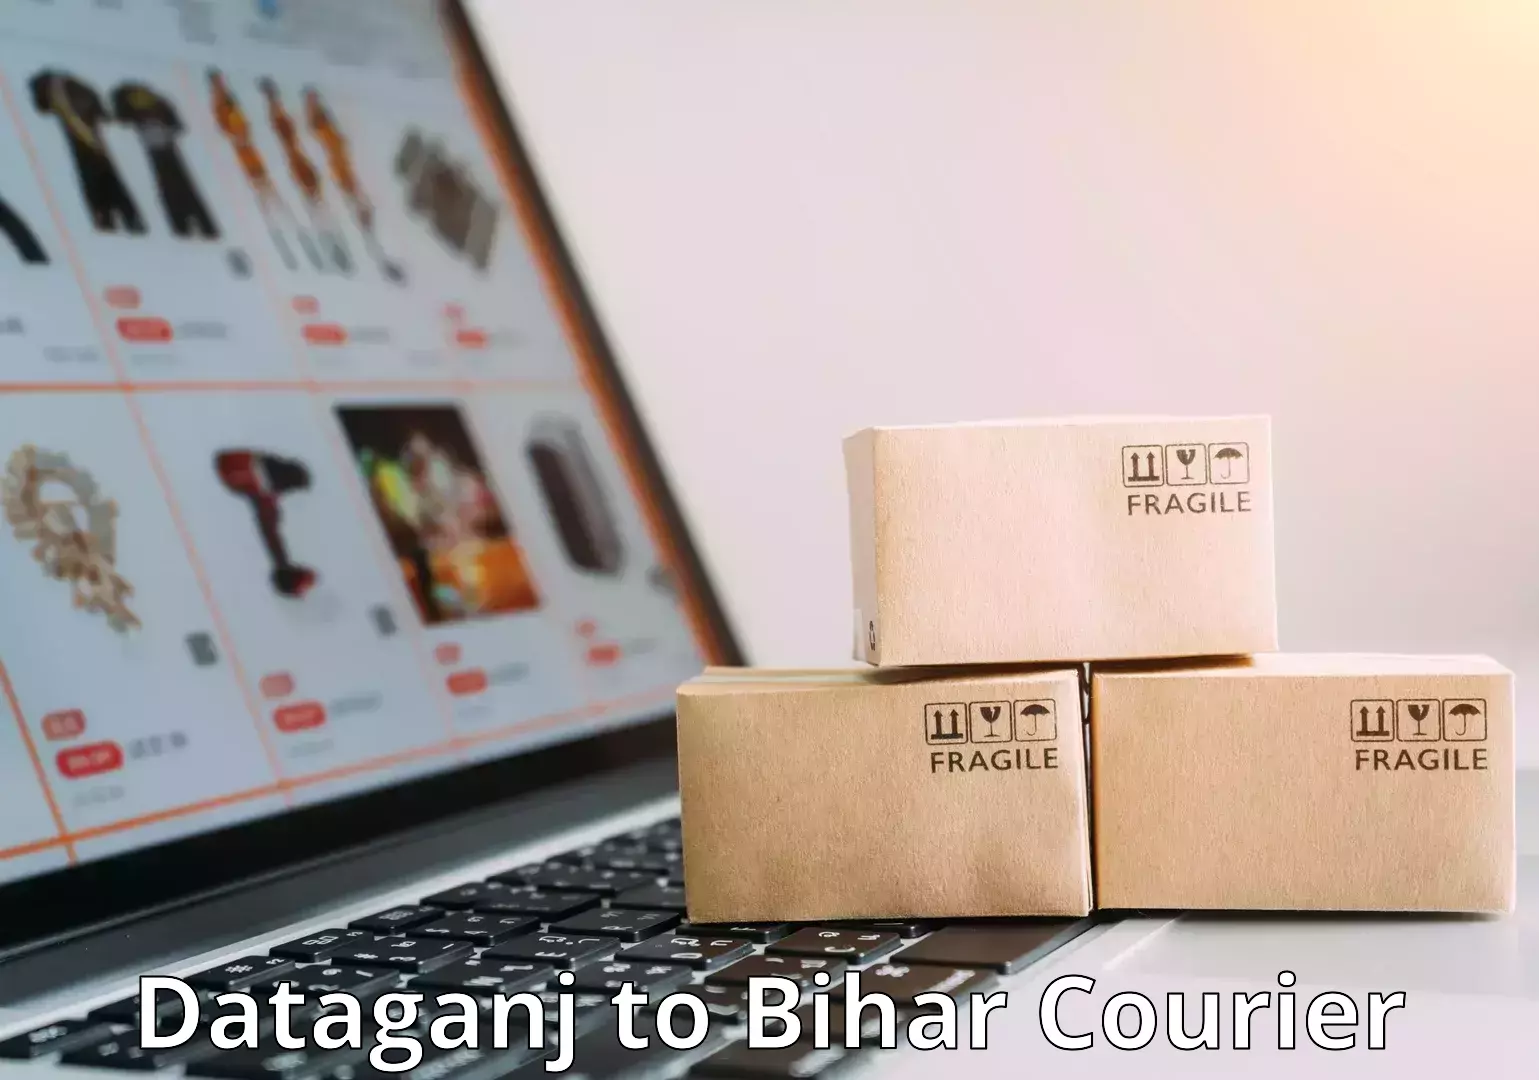 Luggage transit service Dataganj to Bihar